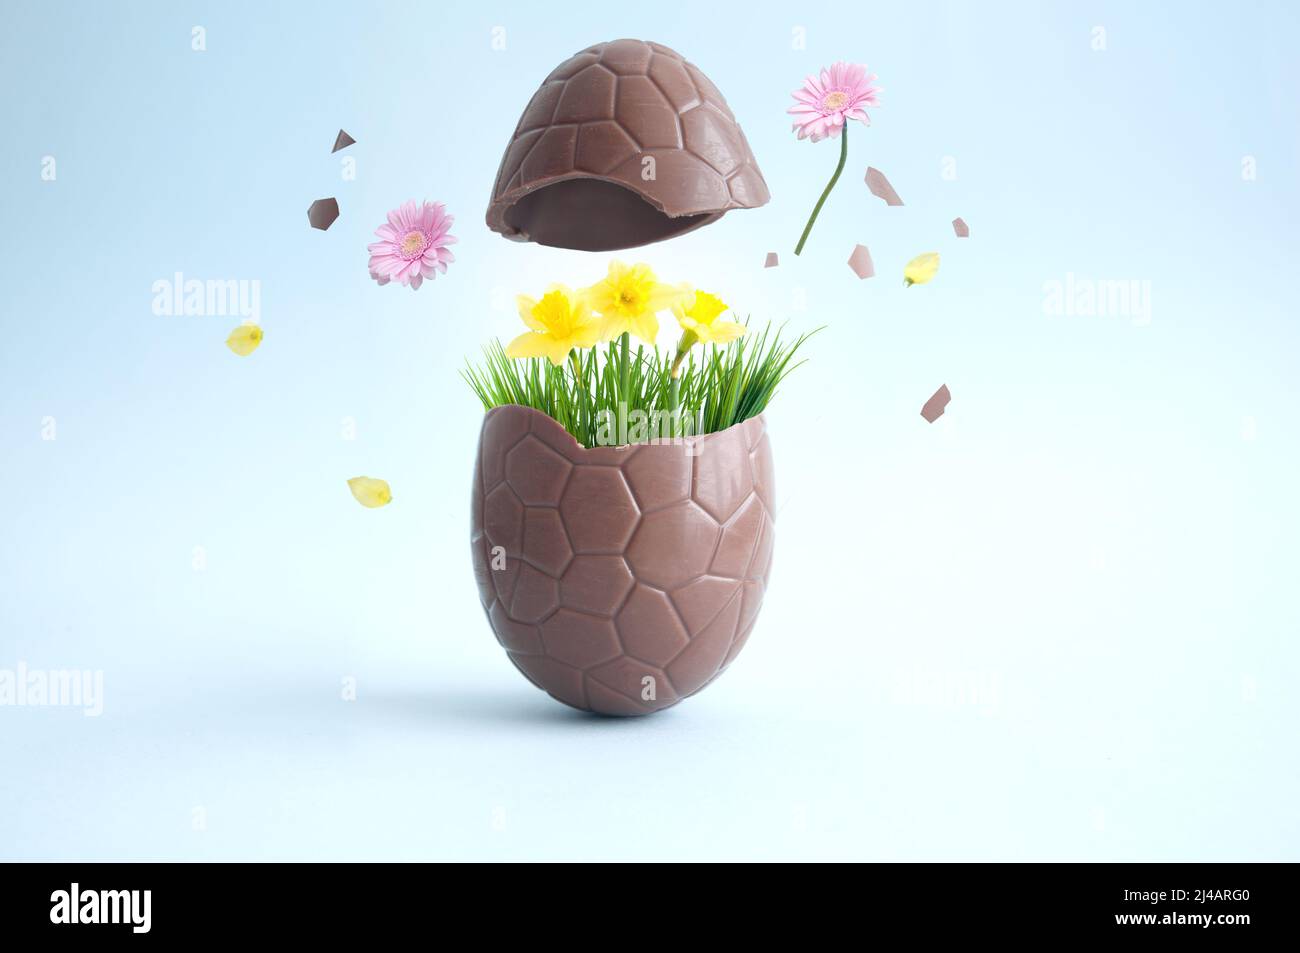 Schokolade osterei bricht mit Explosion der Frühlingsblumen auf Stockfoto